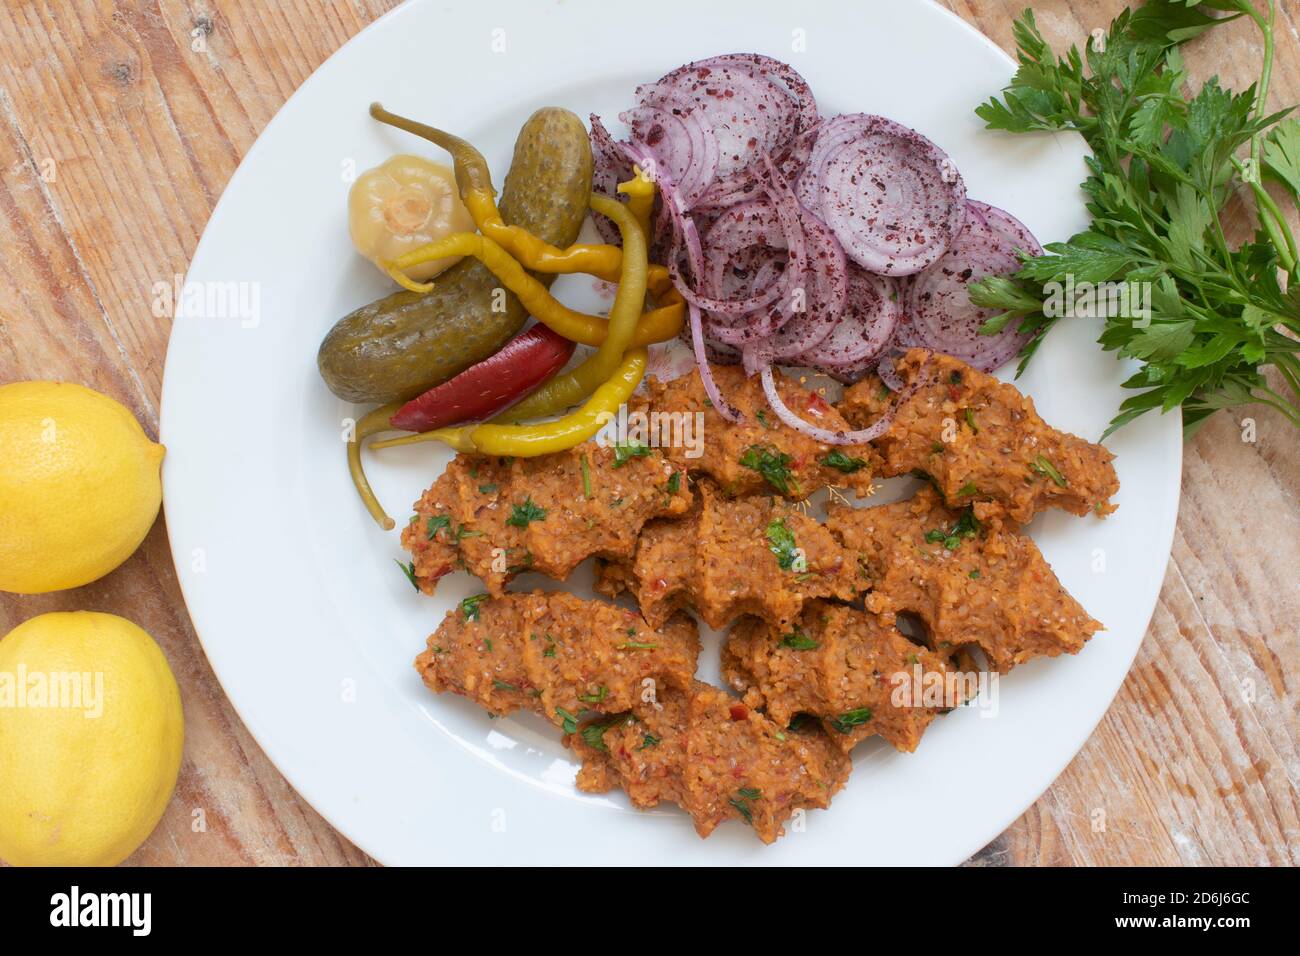 La cuisine turque est servie avec du bulgur et des lentilles sur une assiette de parquet. Avec salade d'oignons, cornichons, persil et citron. Banque D'Images